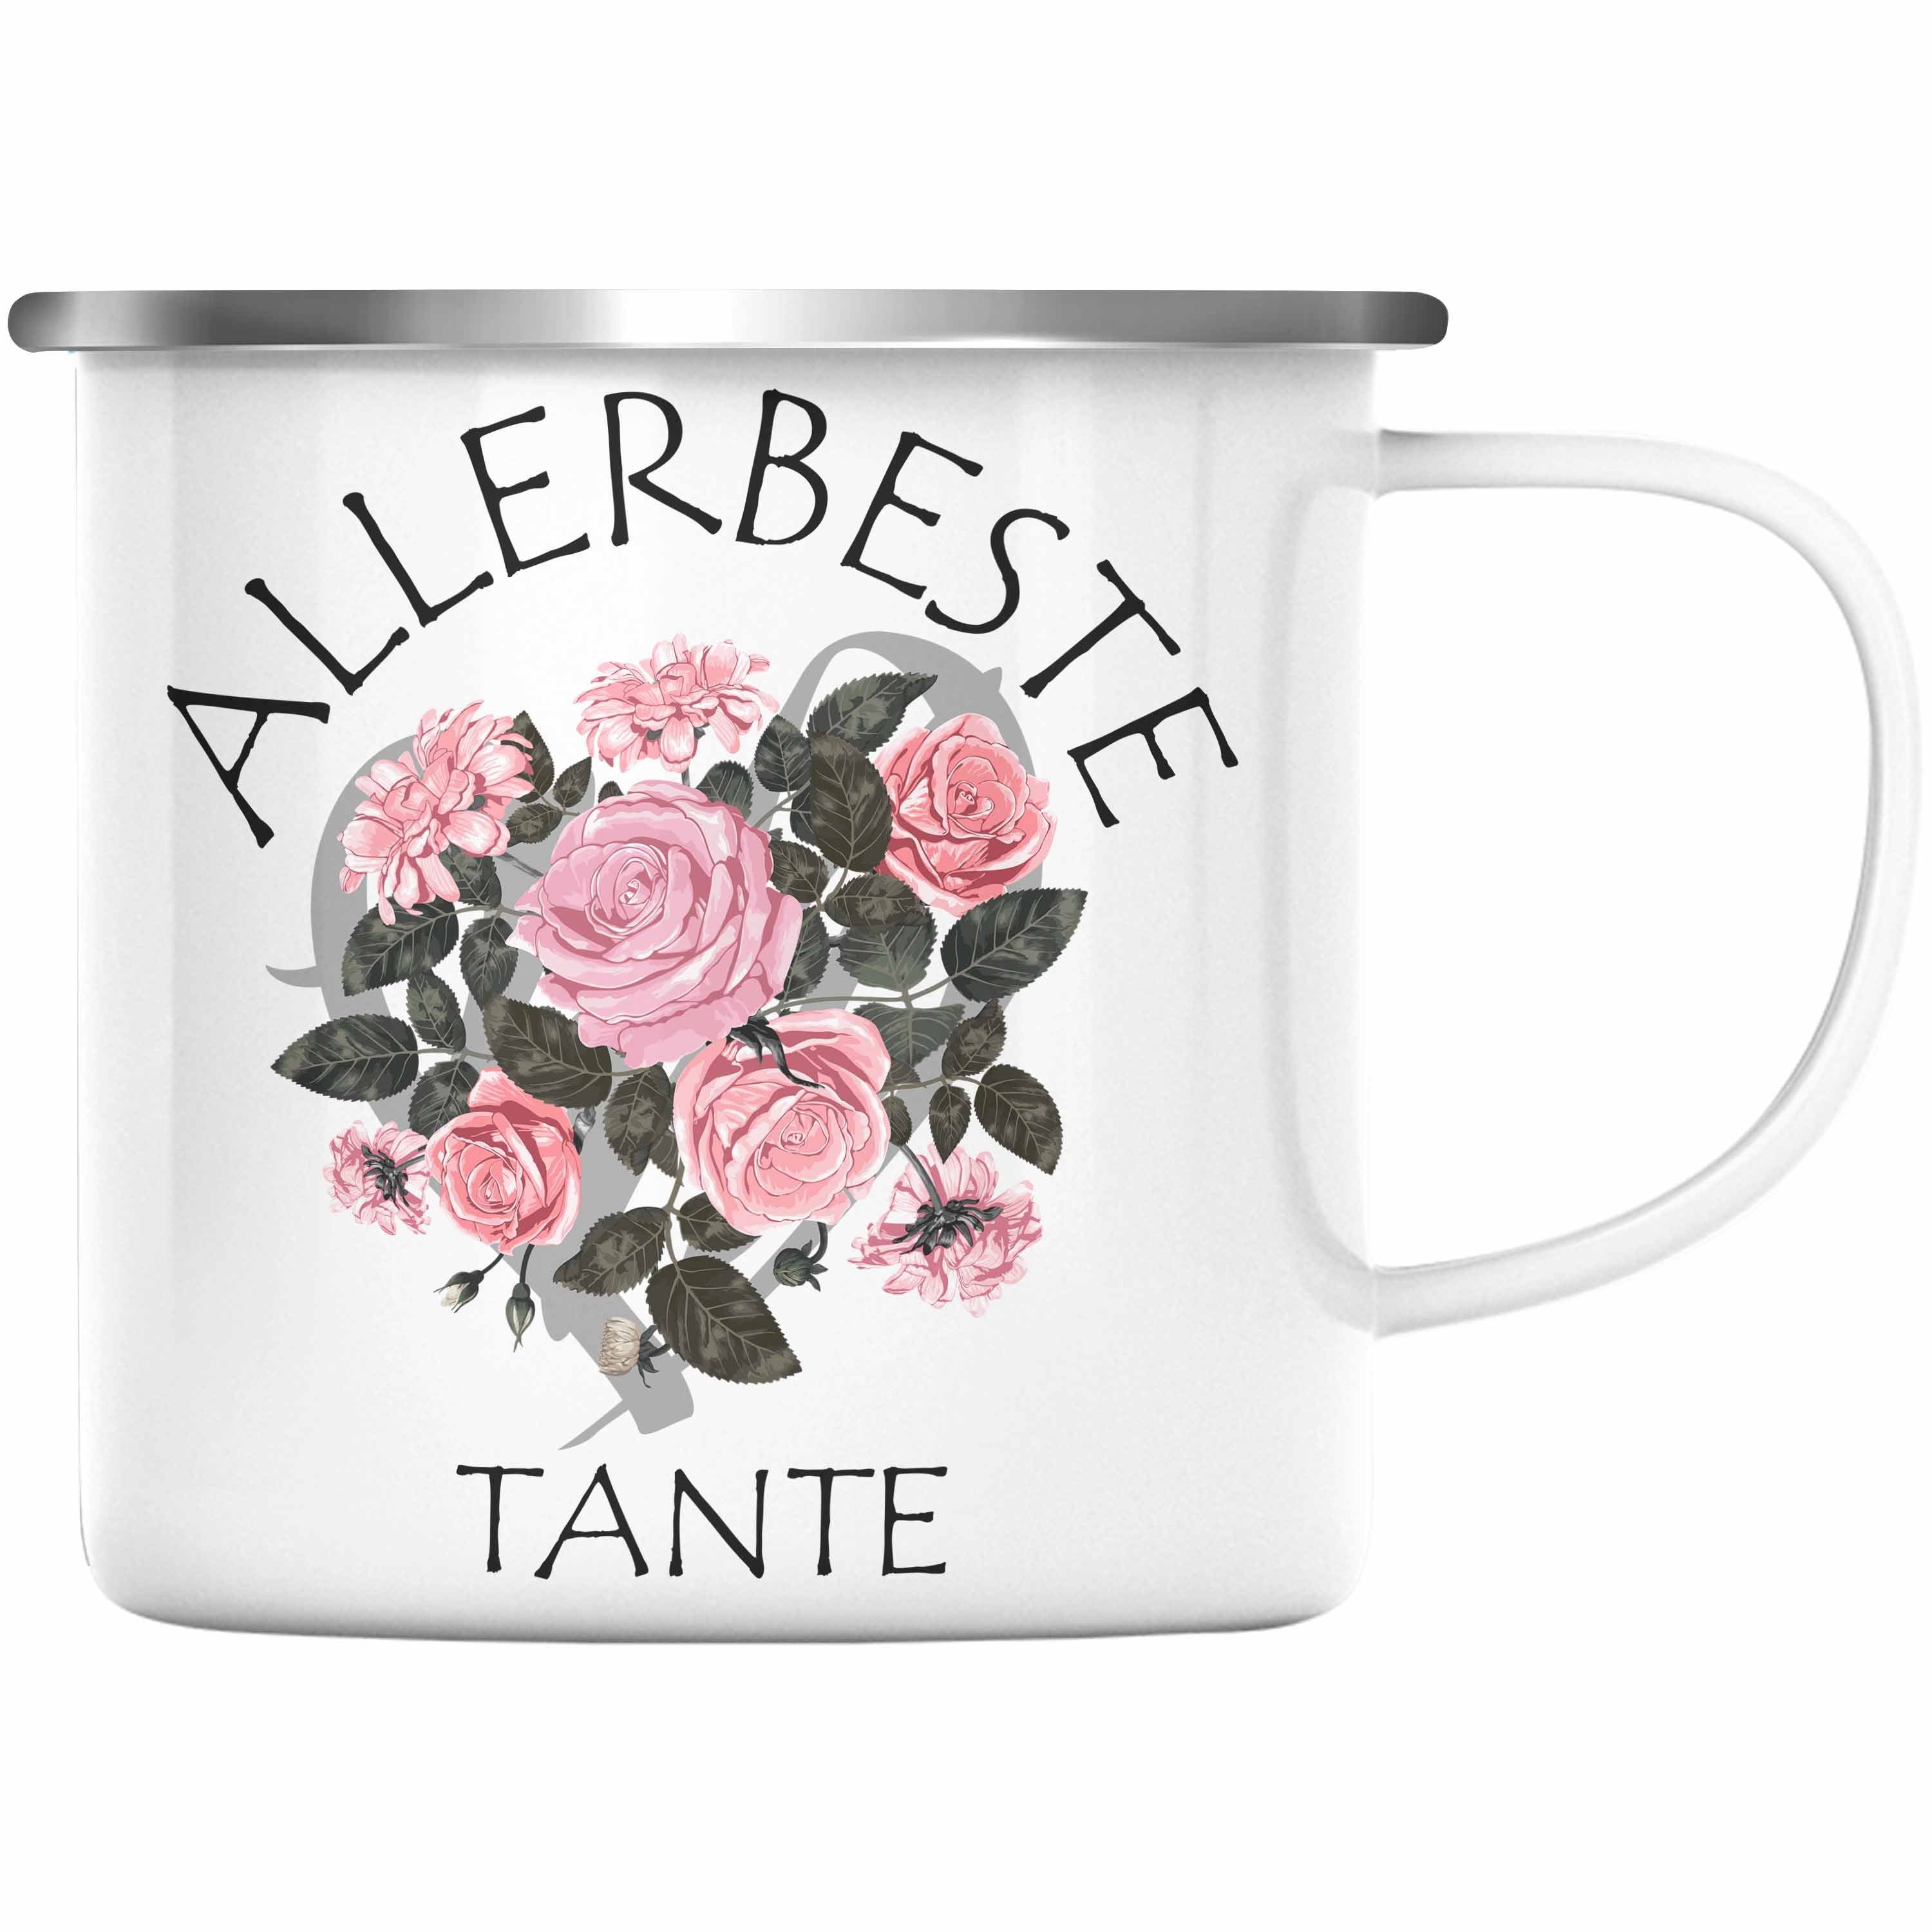 Trendation Thermotasse Trendation - Beste Tante Emaille Tasse Geschenk KaffeeEmaille Tasse für Beste Tante der Welt Geschenkidee Geburtstag Silber